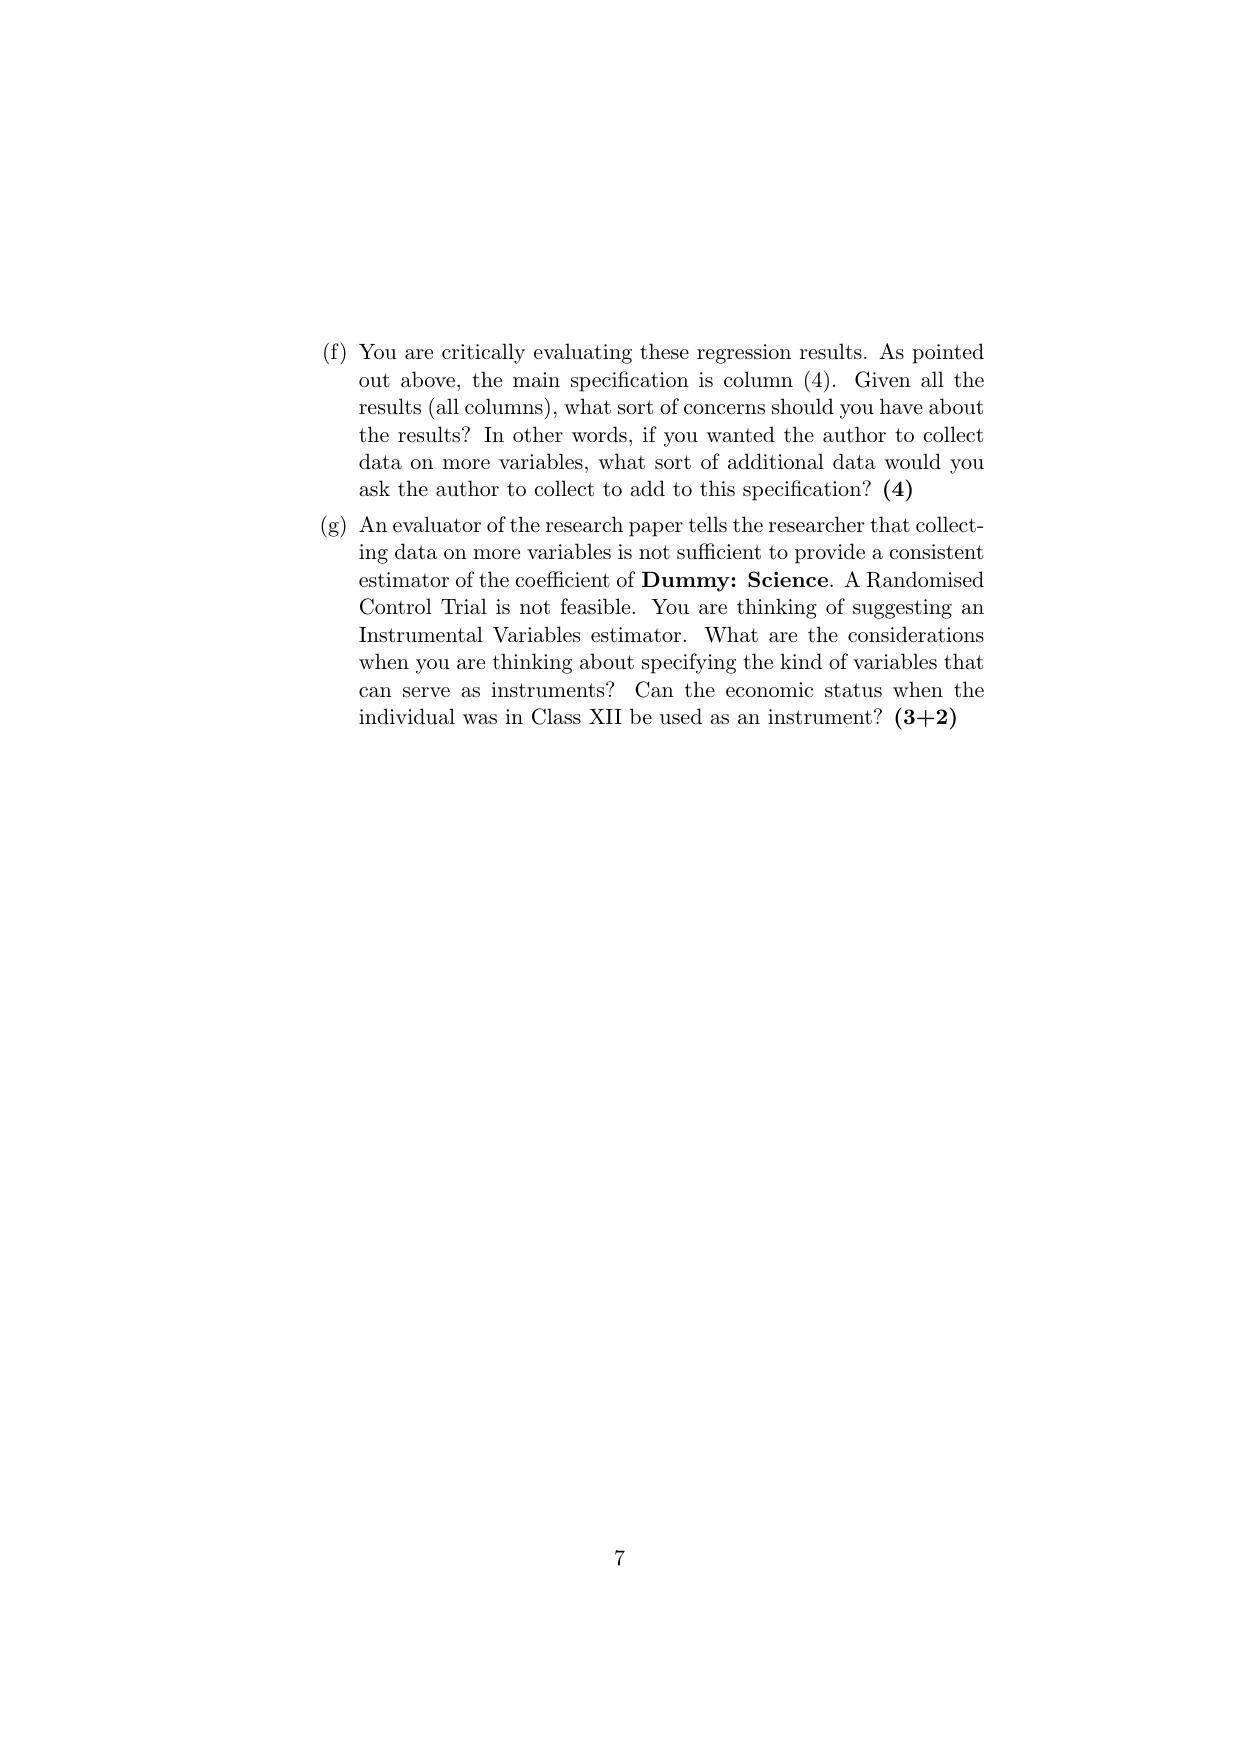 ISI Admission Test JRF in Quantitative Economics QEB 2019 Sample Paper - Page 7